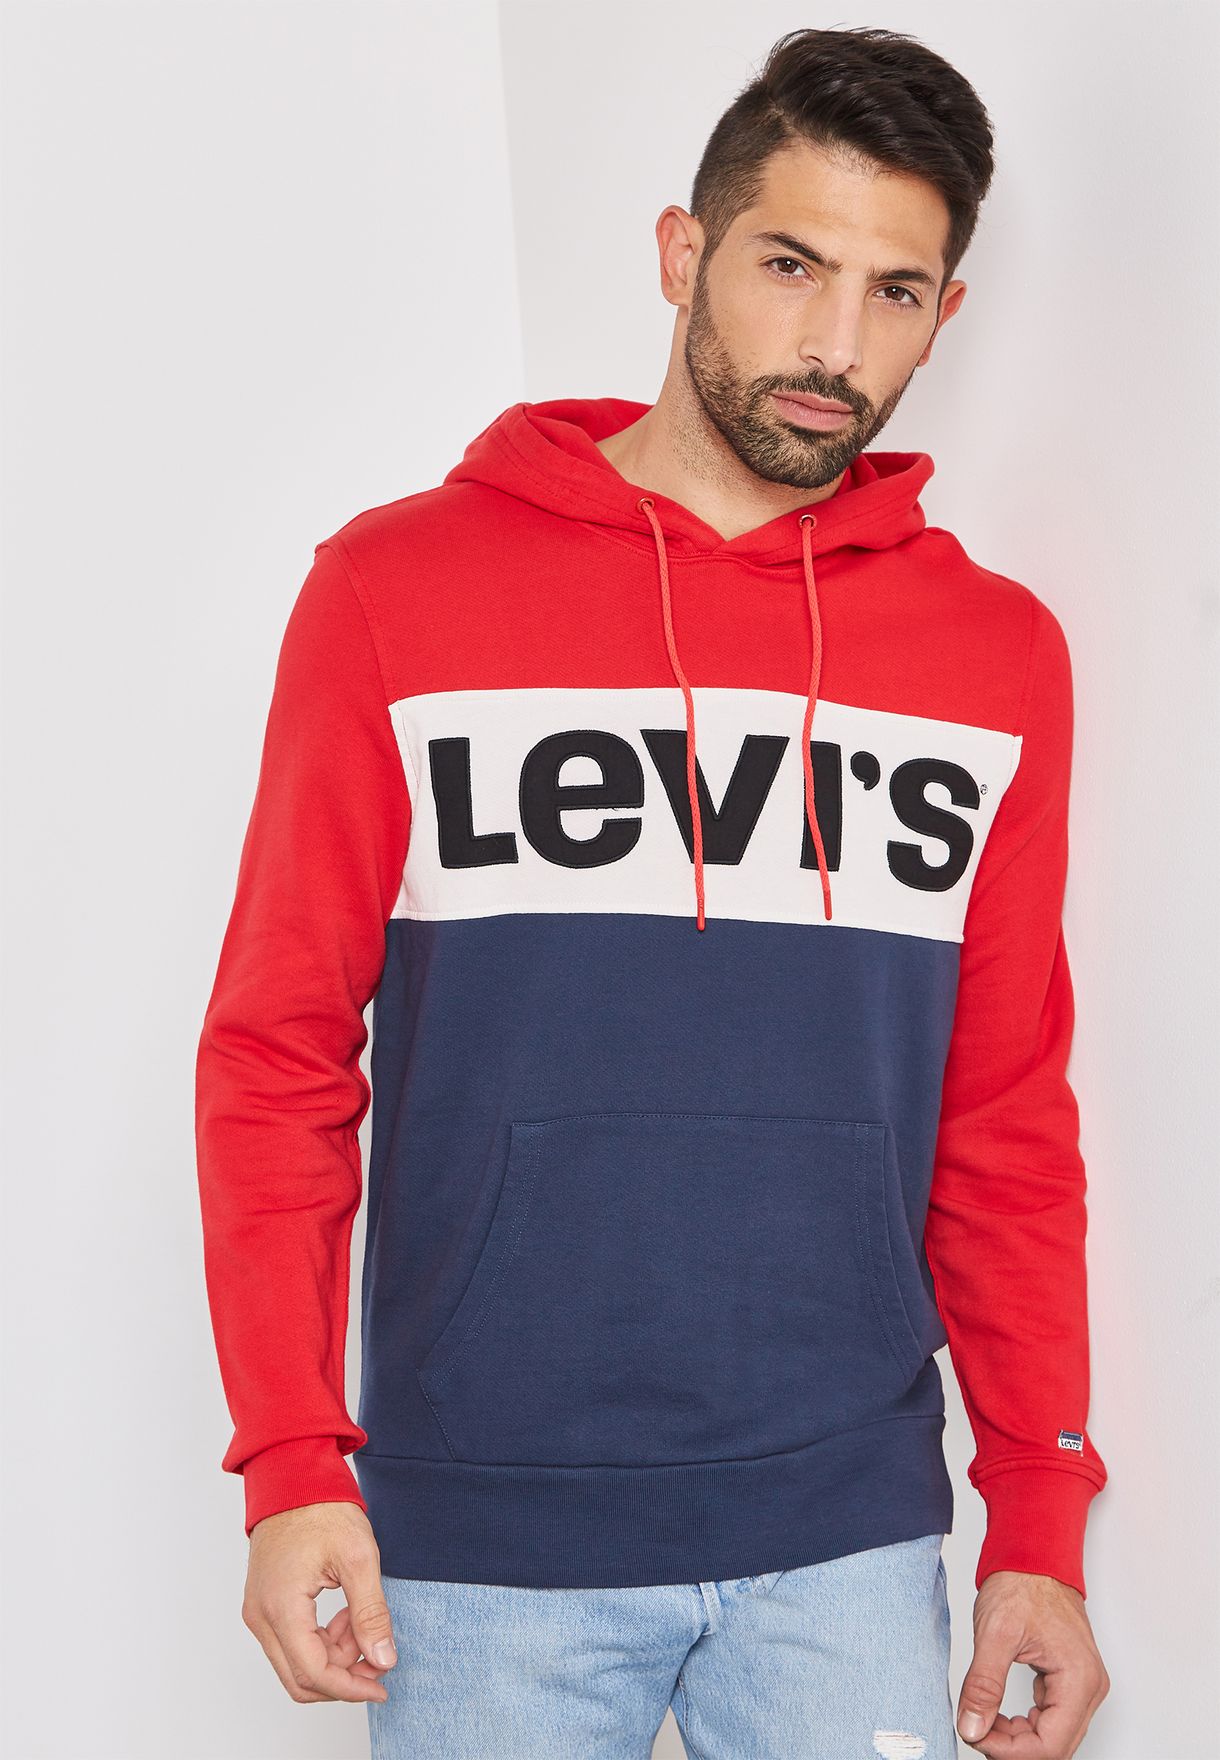 Buy Levis multicolor Graphic Logo 